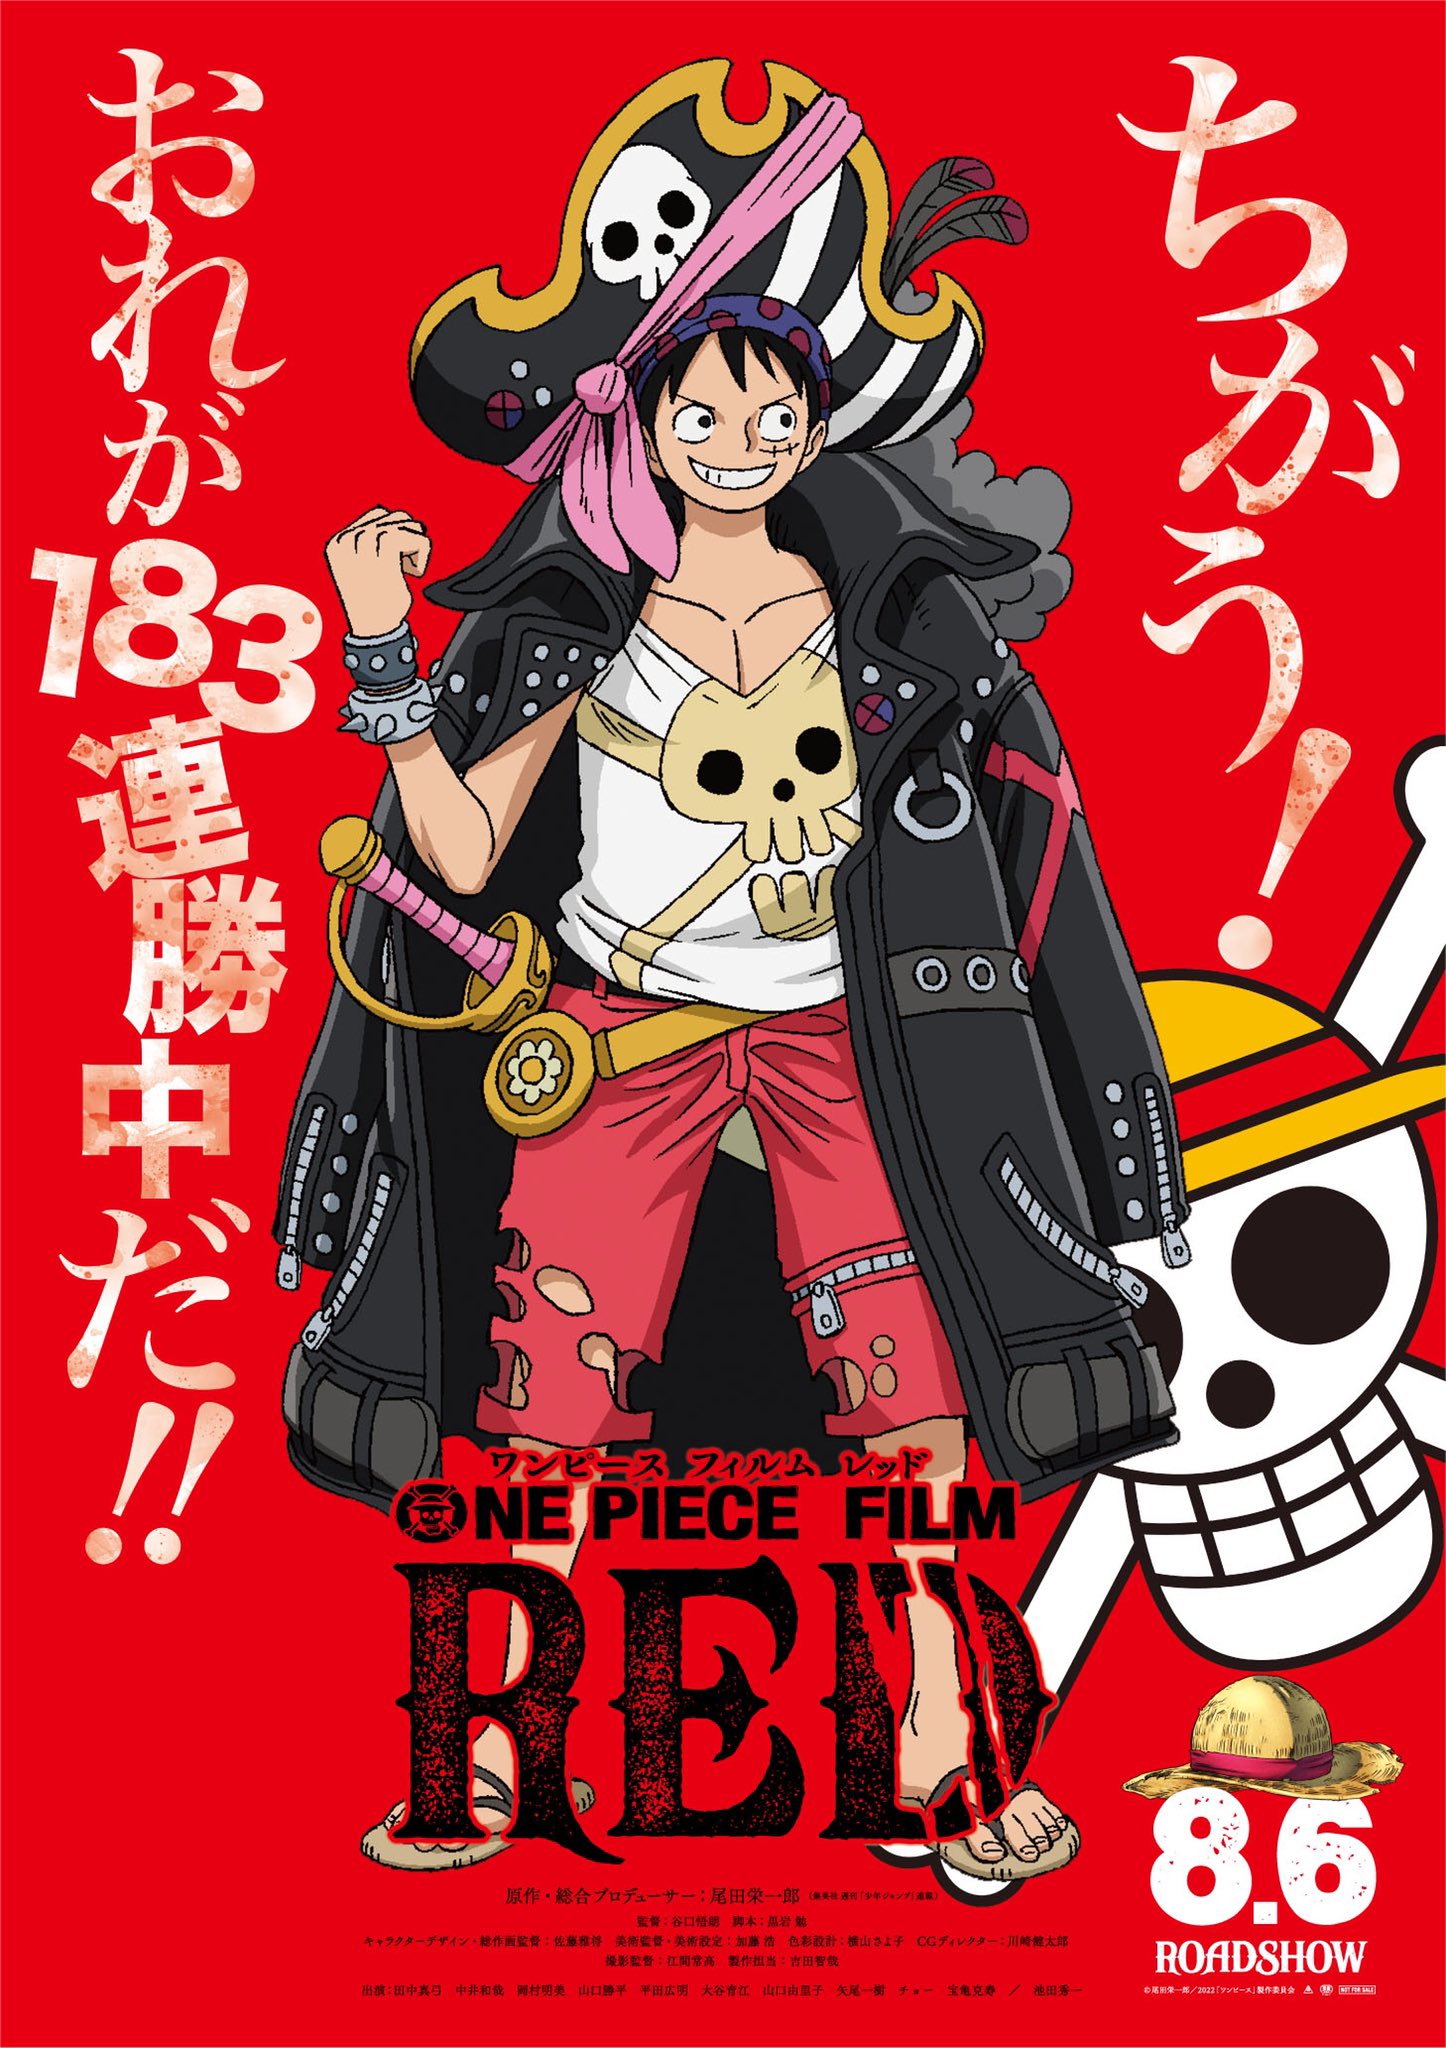 Film red piece one One Piece